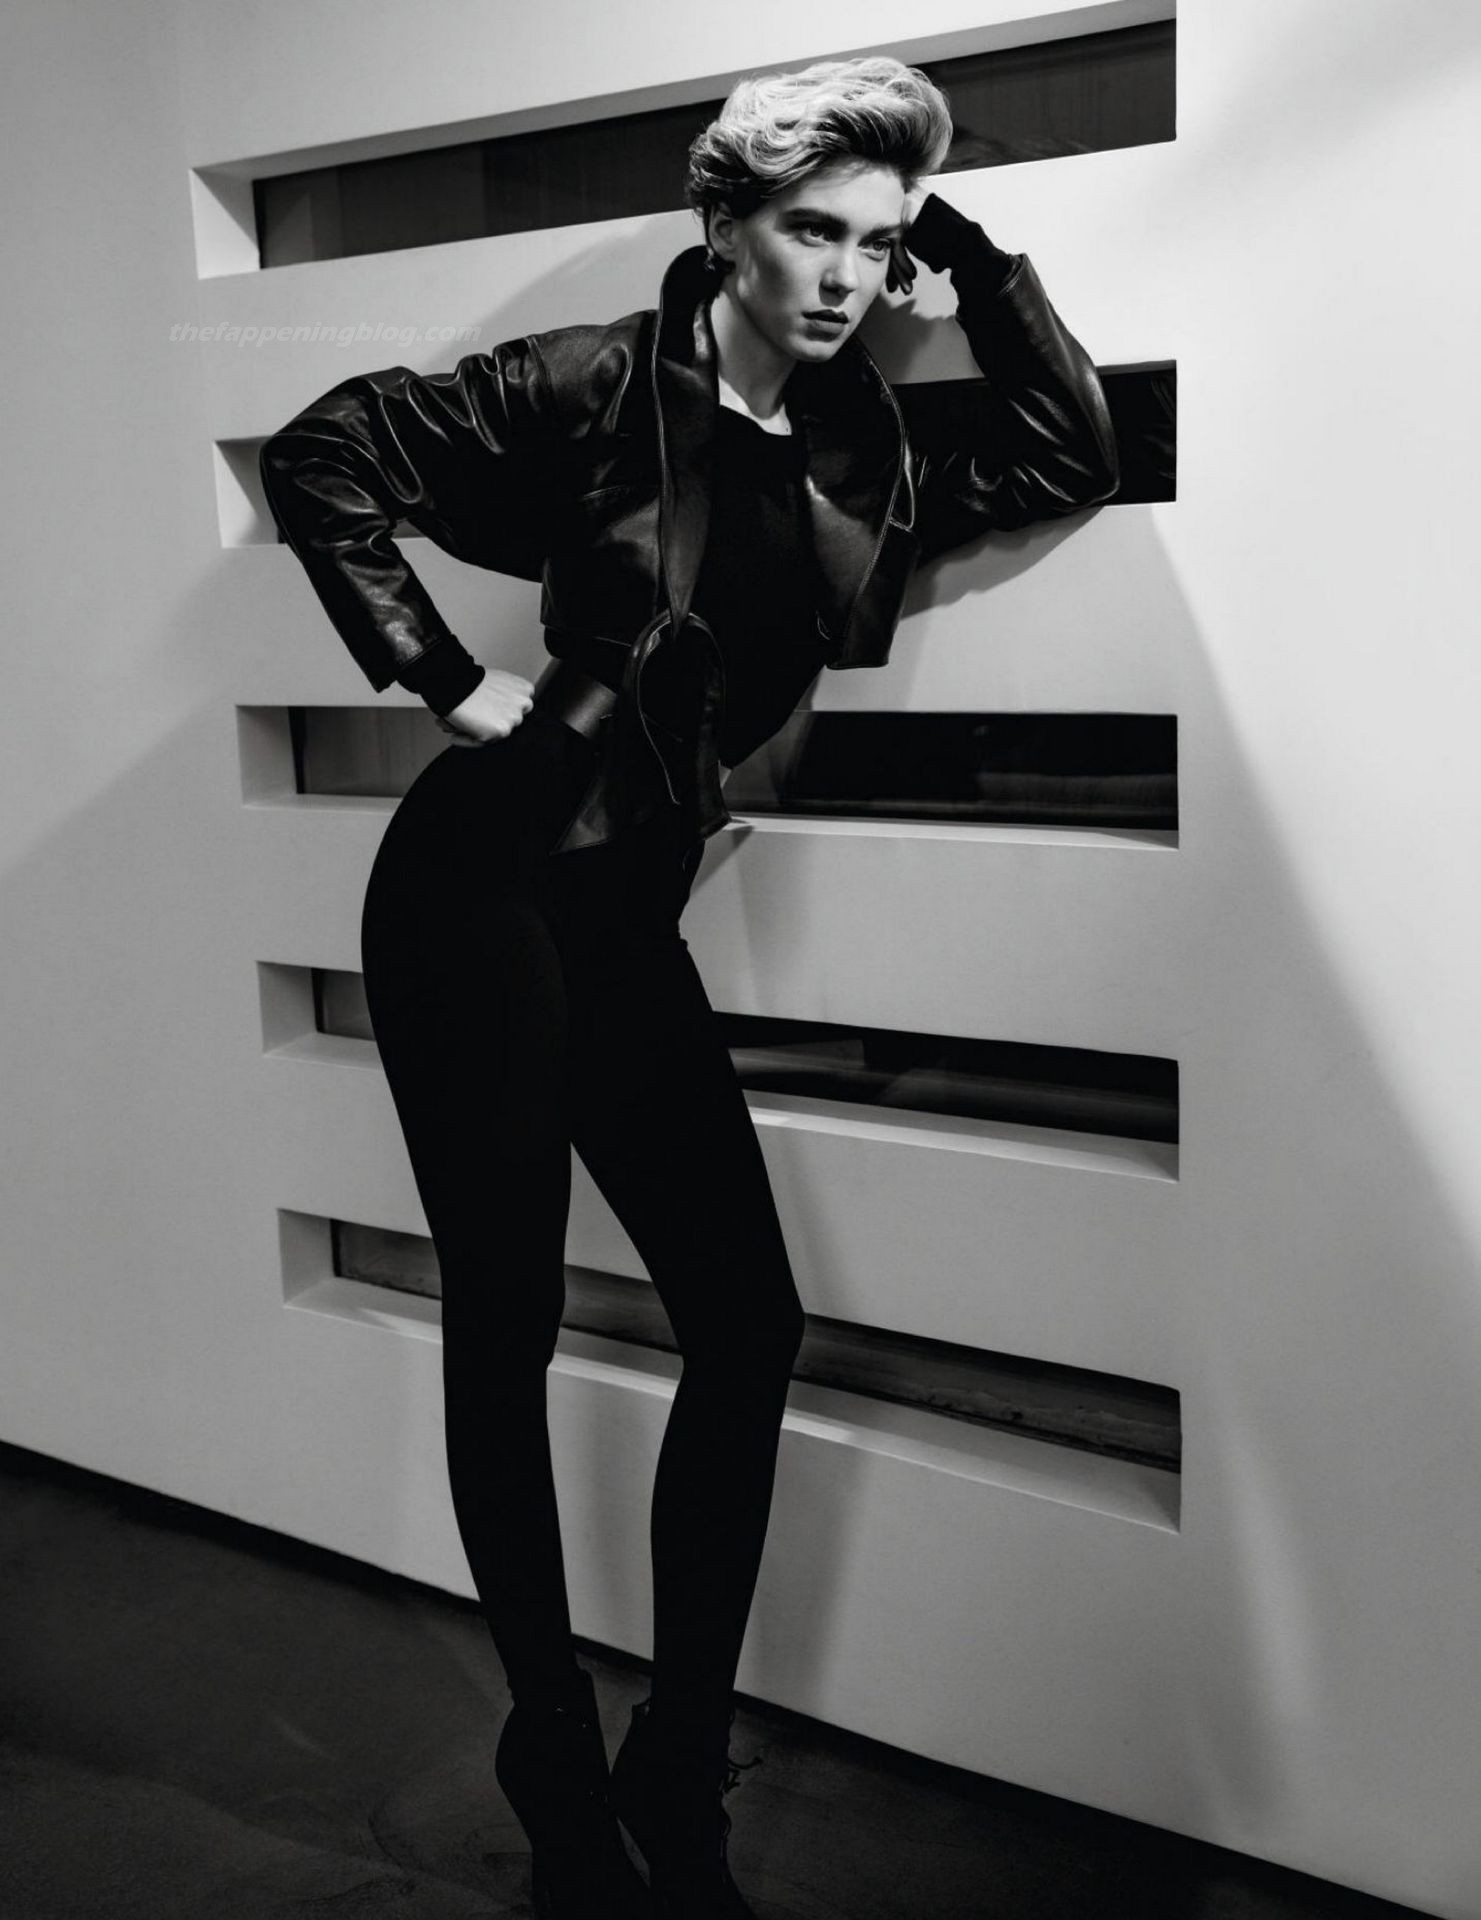 Lea Seydoux Sexy - Vogue (36 Photos)